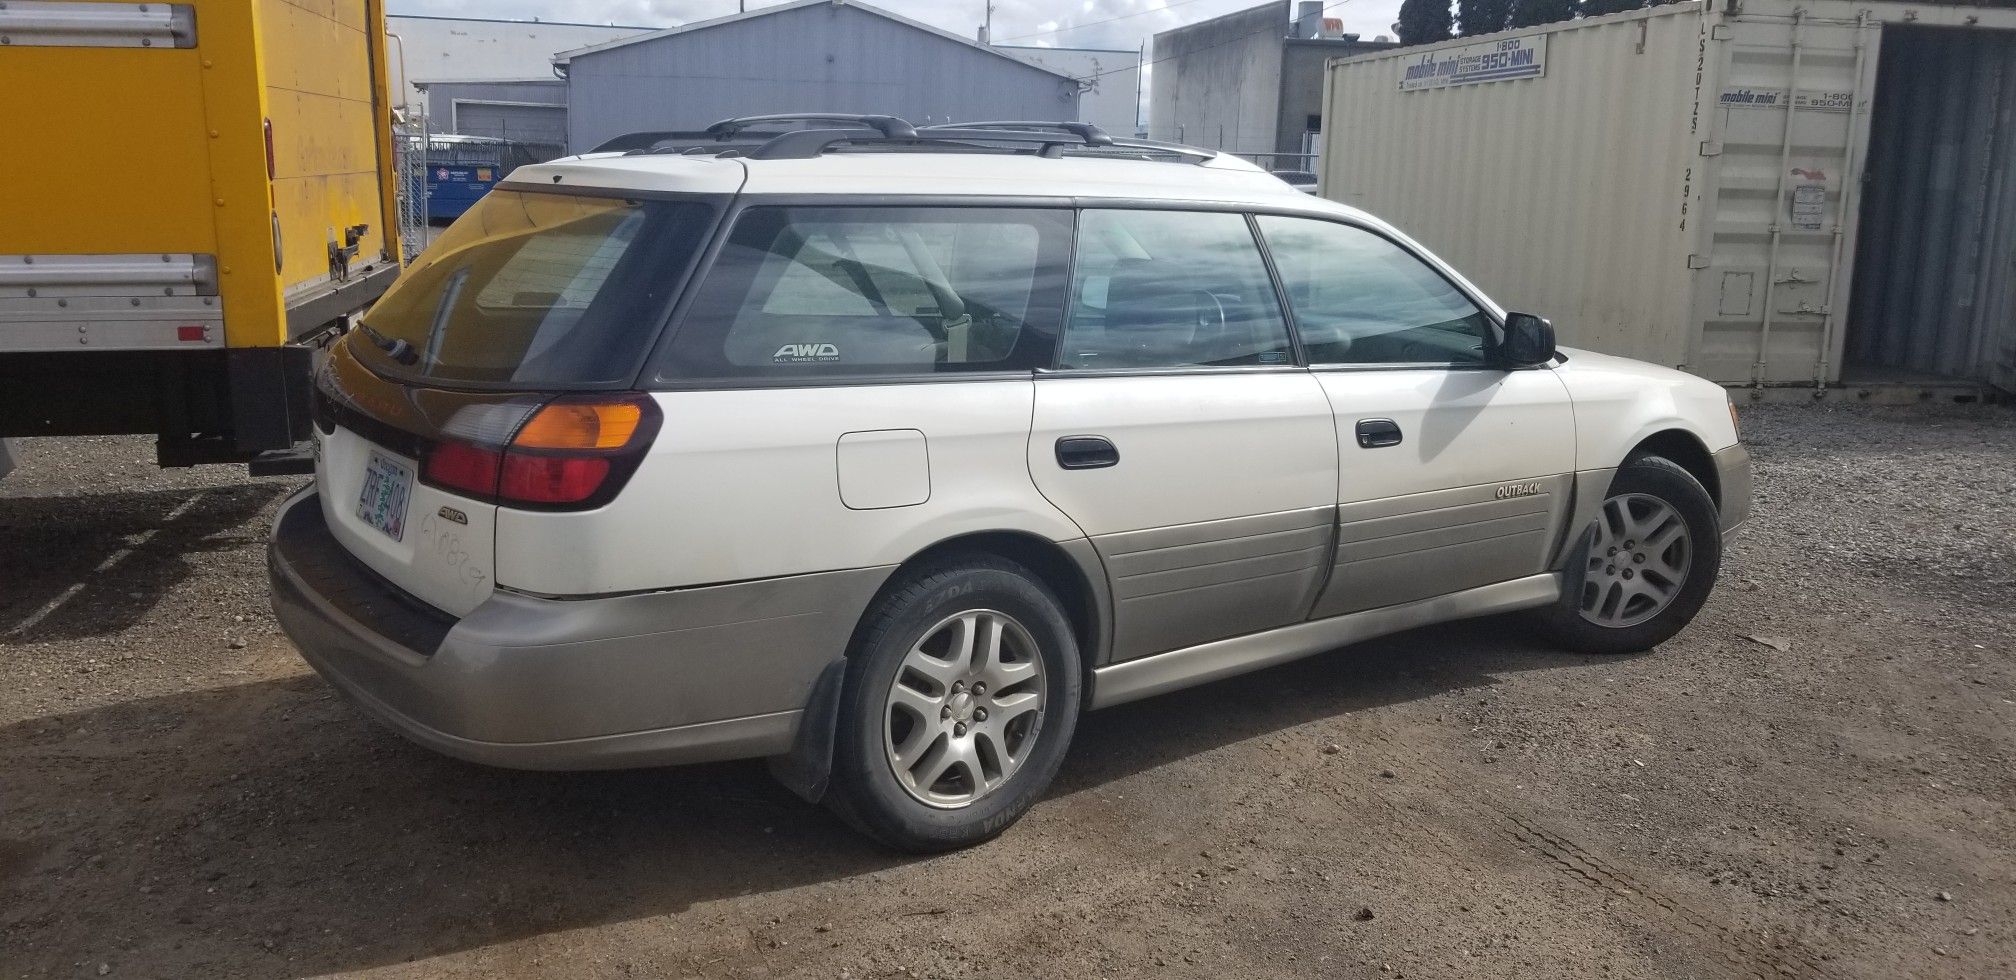 2003 Subaru Outback